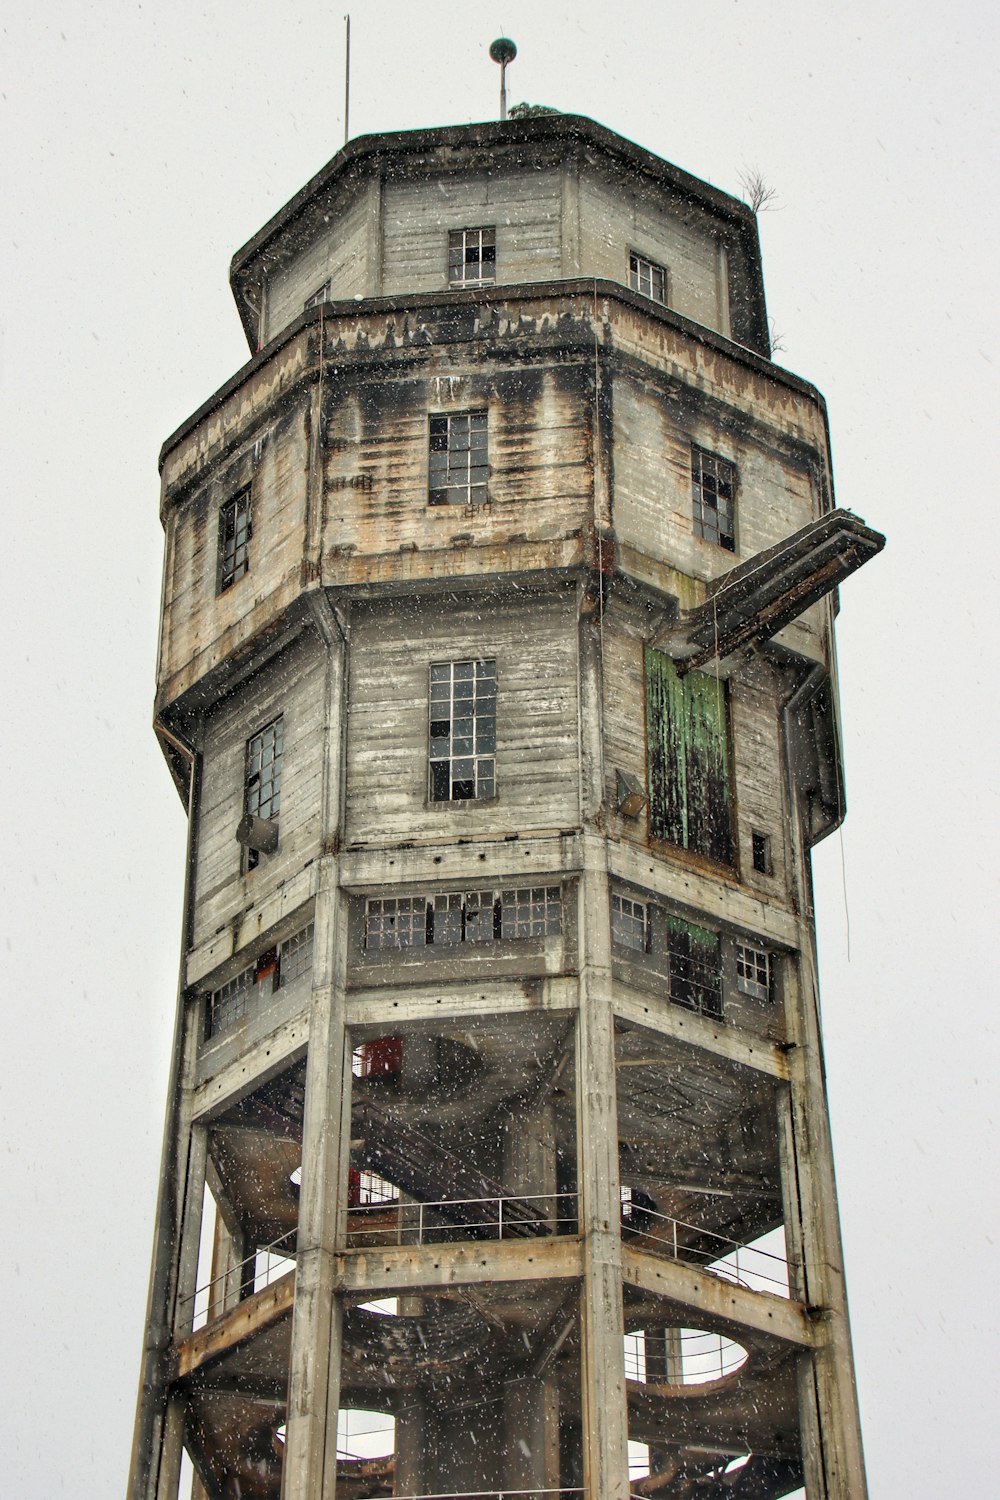 un'alta torre con un orologio in cima